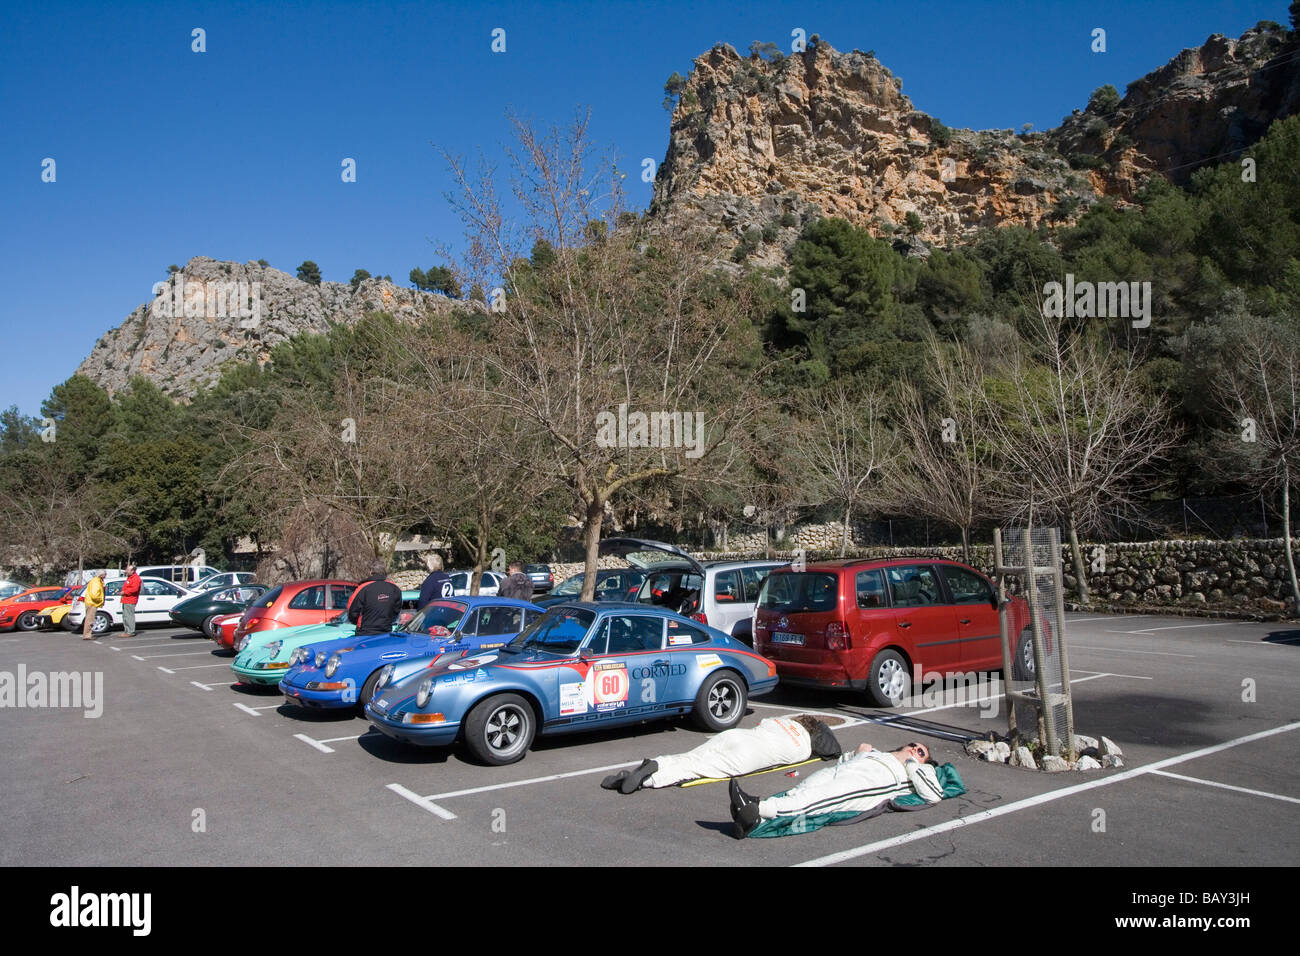 Appoggio Rallye Driver, Rally classico Isla Mallorca, vicino a Cala de Sa Calobra, Maiorca, isole Baleari, Spagna Foto Stock